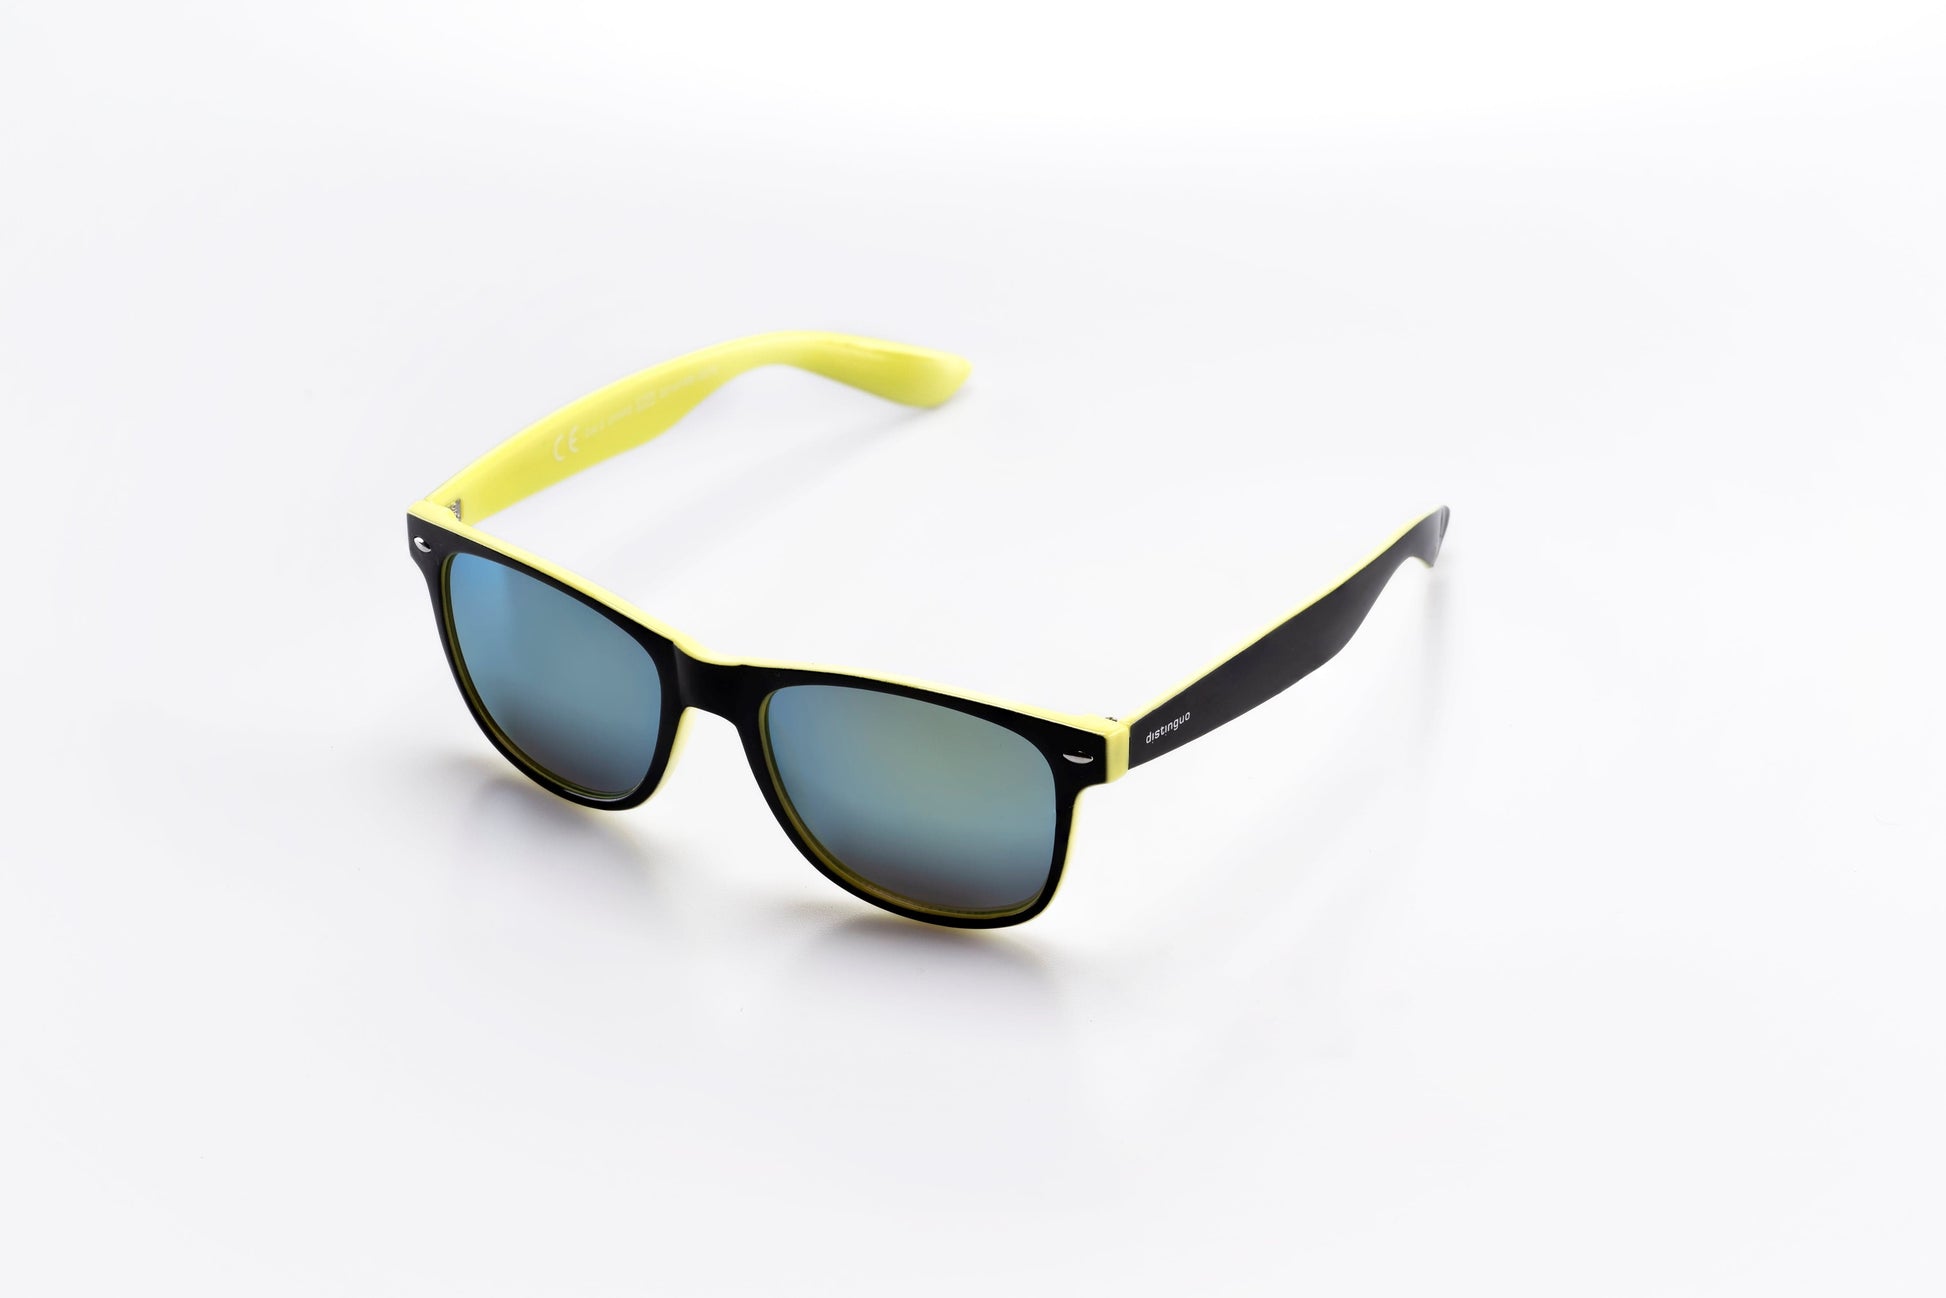 Occhiali da sole Distinguo 502.2 modello Sportivo, montatura in policarbonato nero-giallo con lenti effetto specchio colore giallo. 